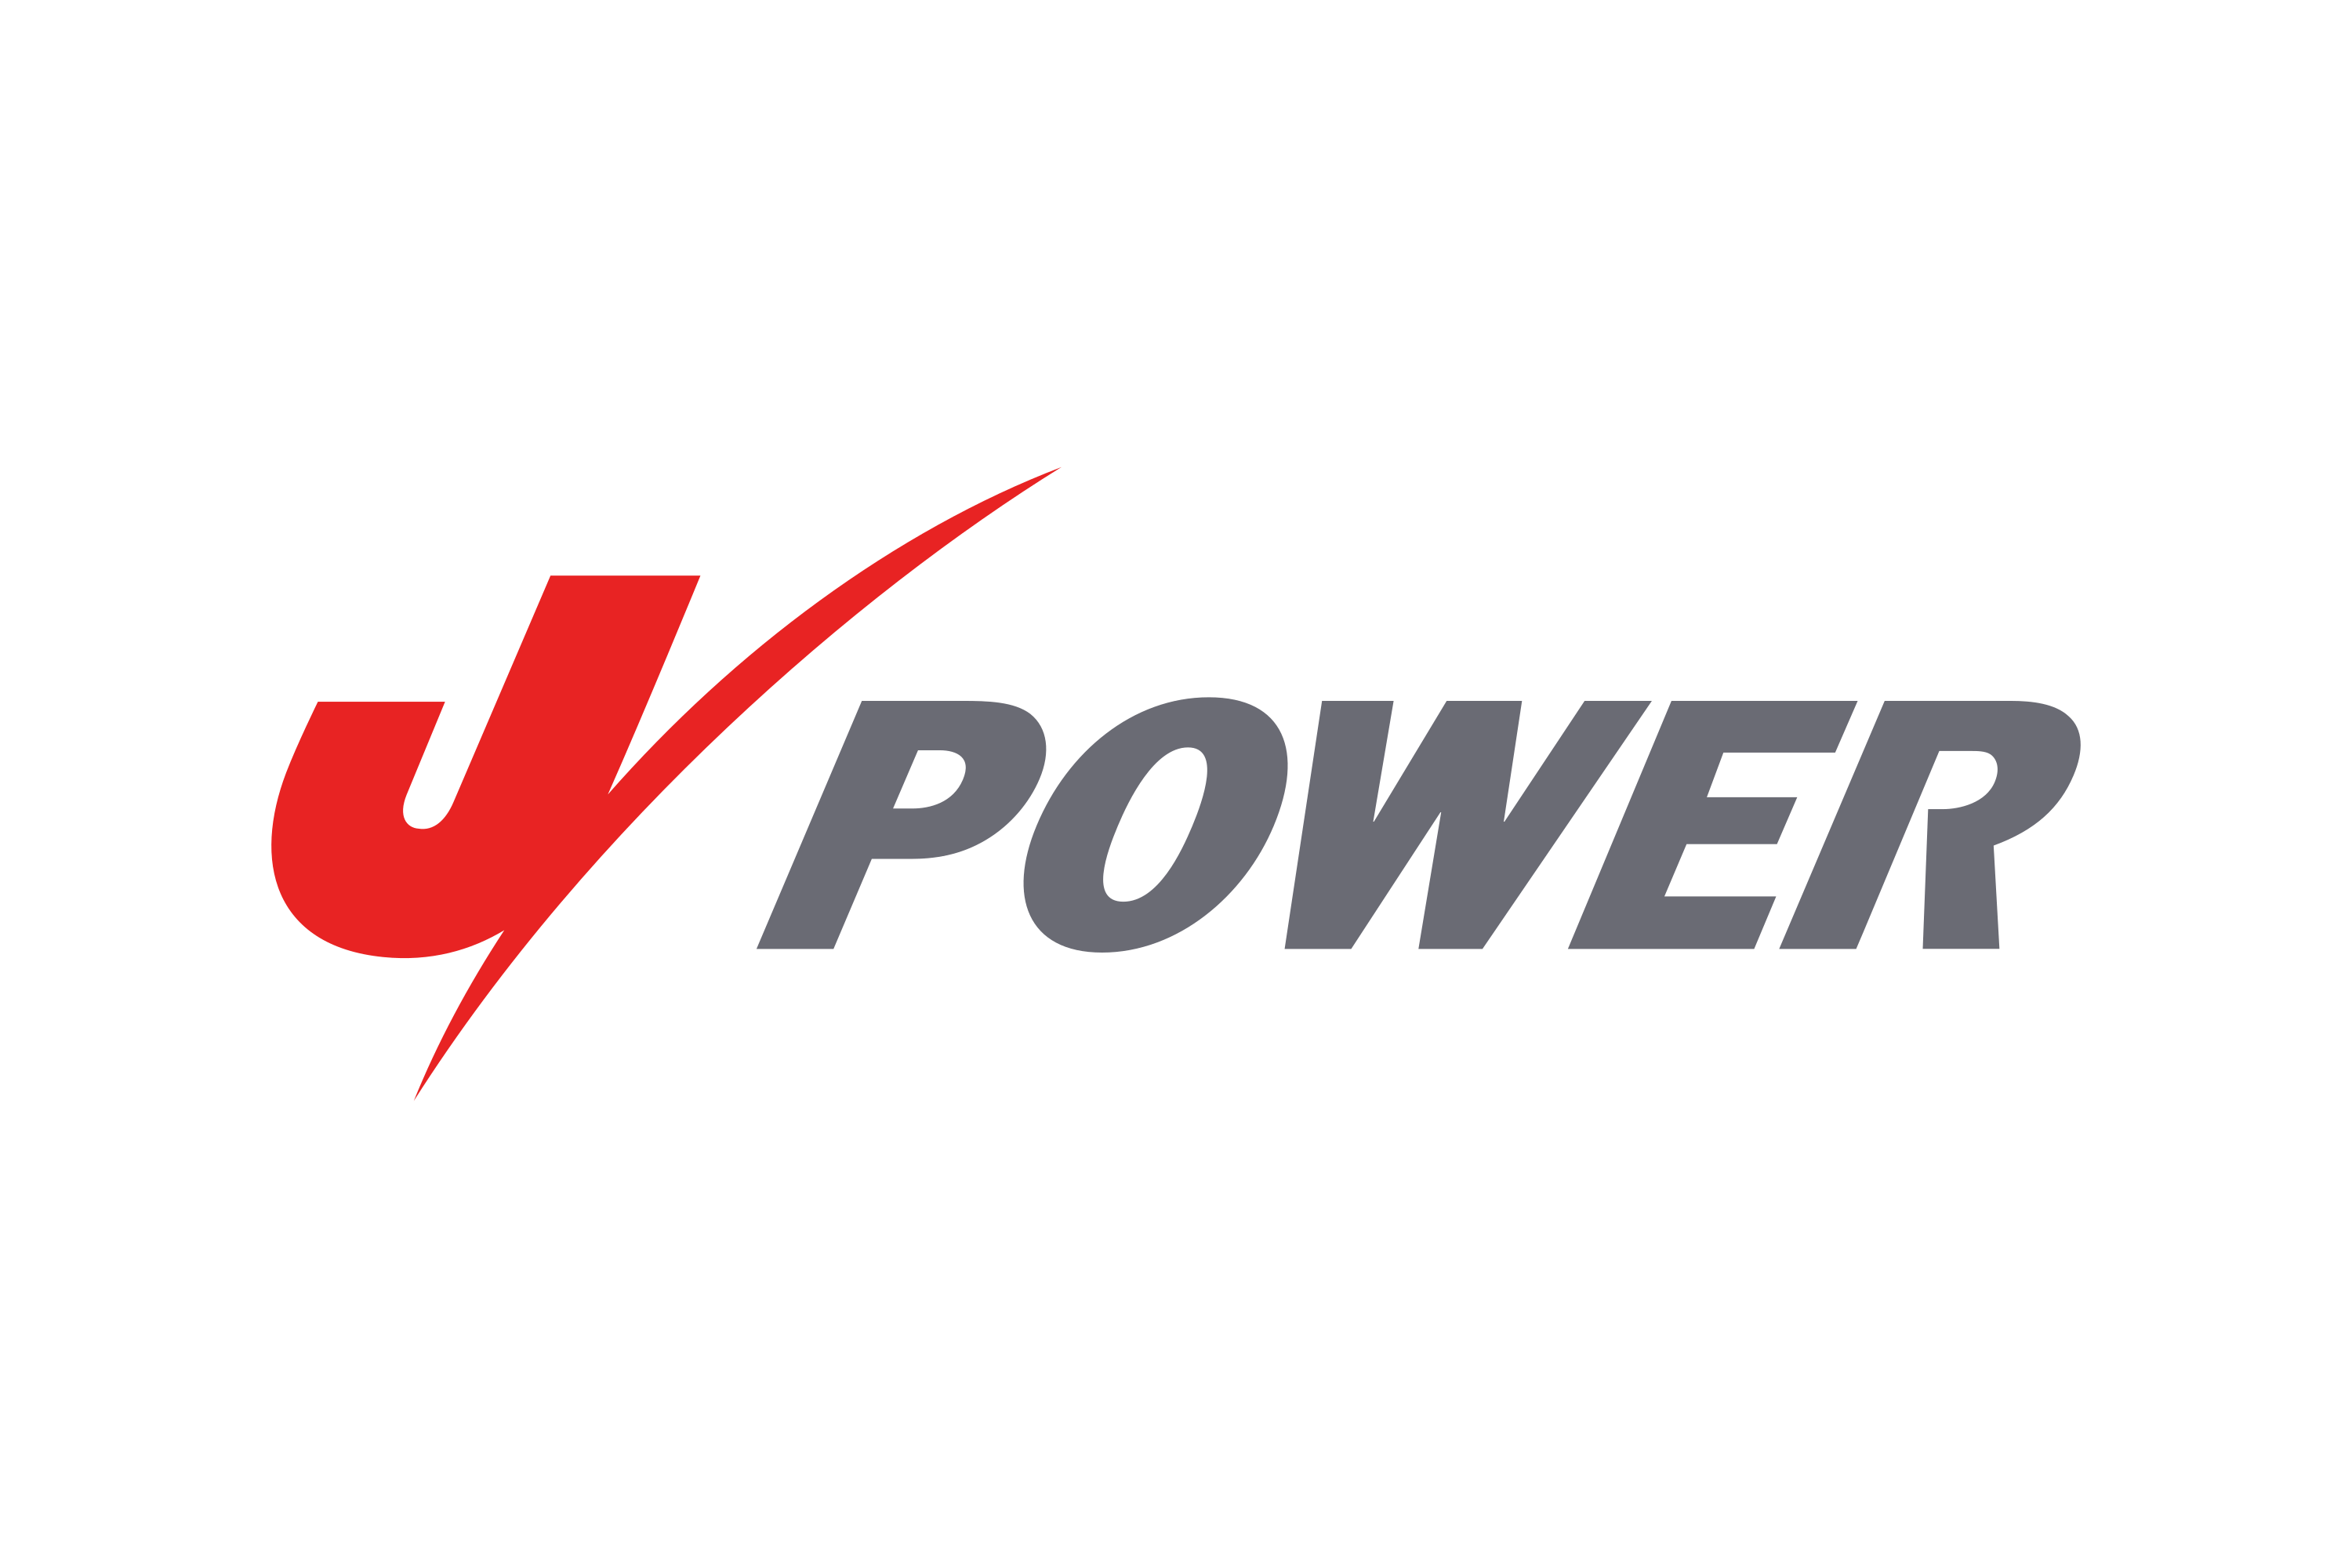 Powered под. Power лого. Martek Power логотип. Power logotip. LEDS Power лого.